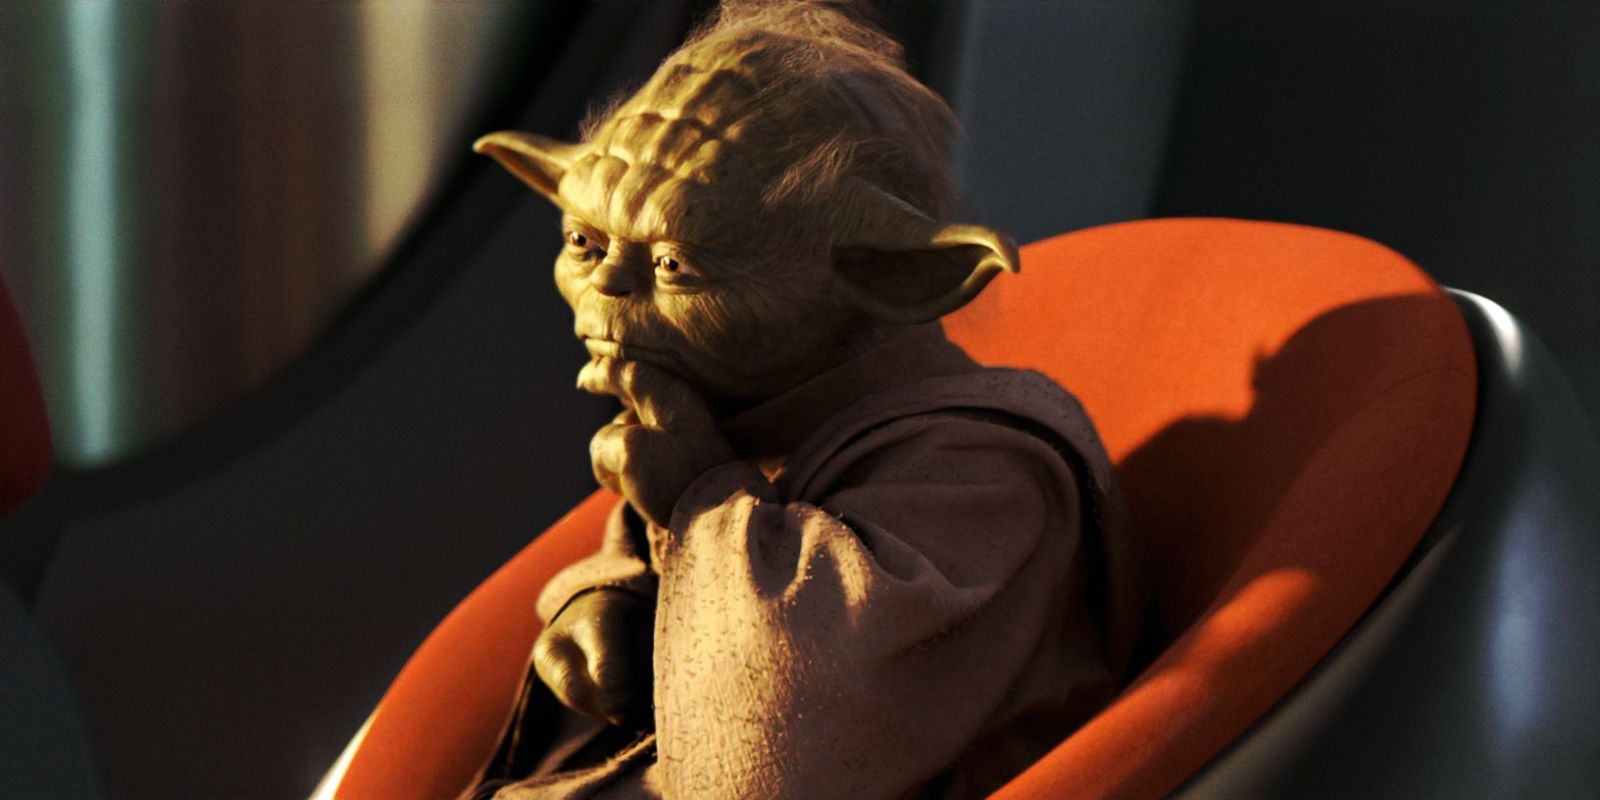 Yoda sat on the Jedi High Council in Star Wars